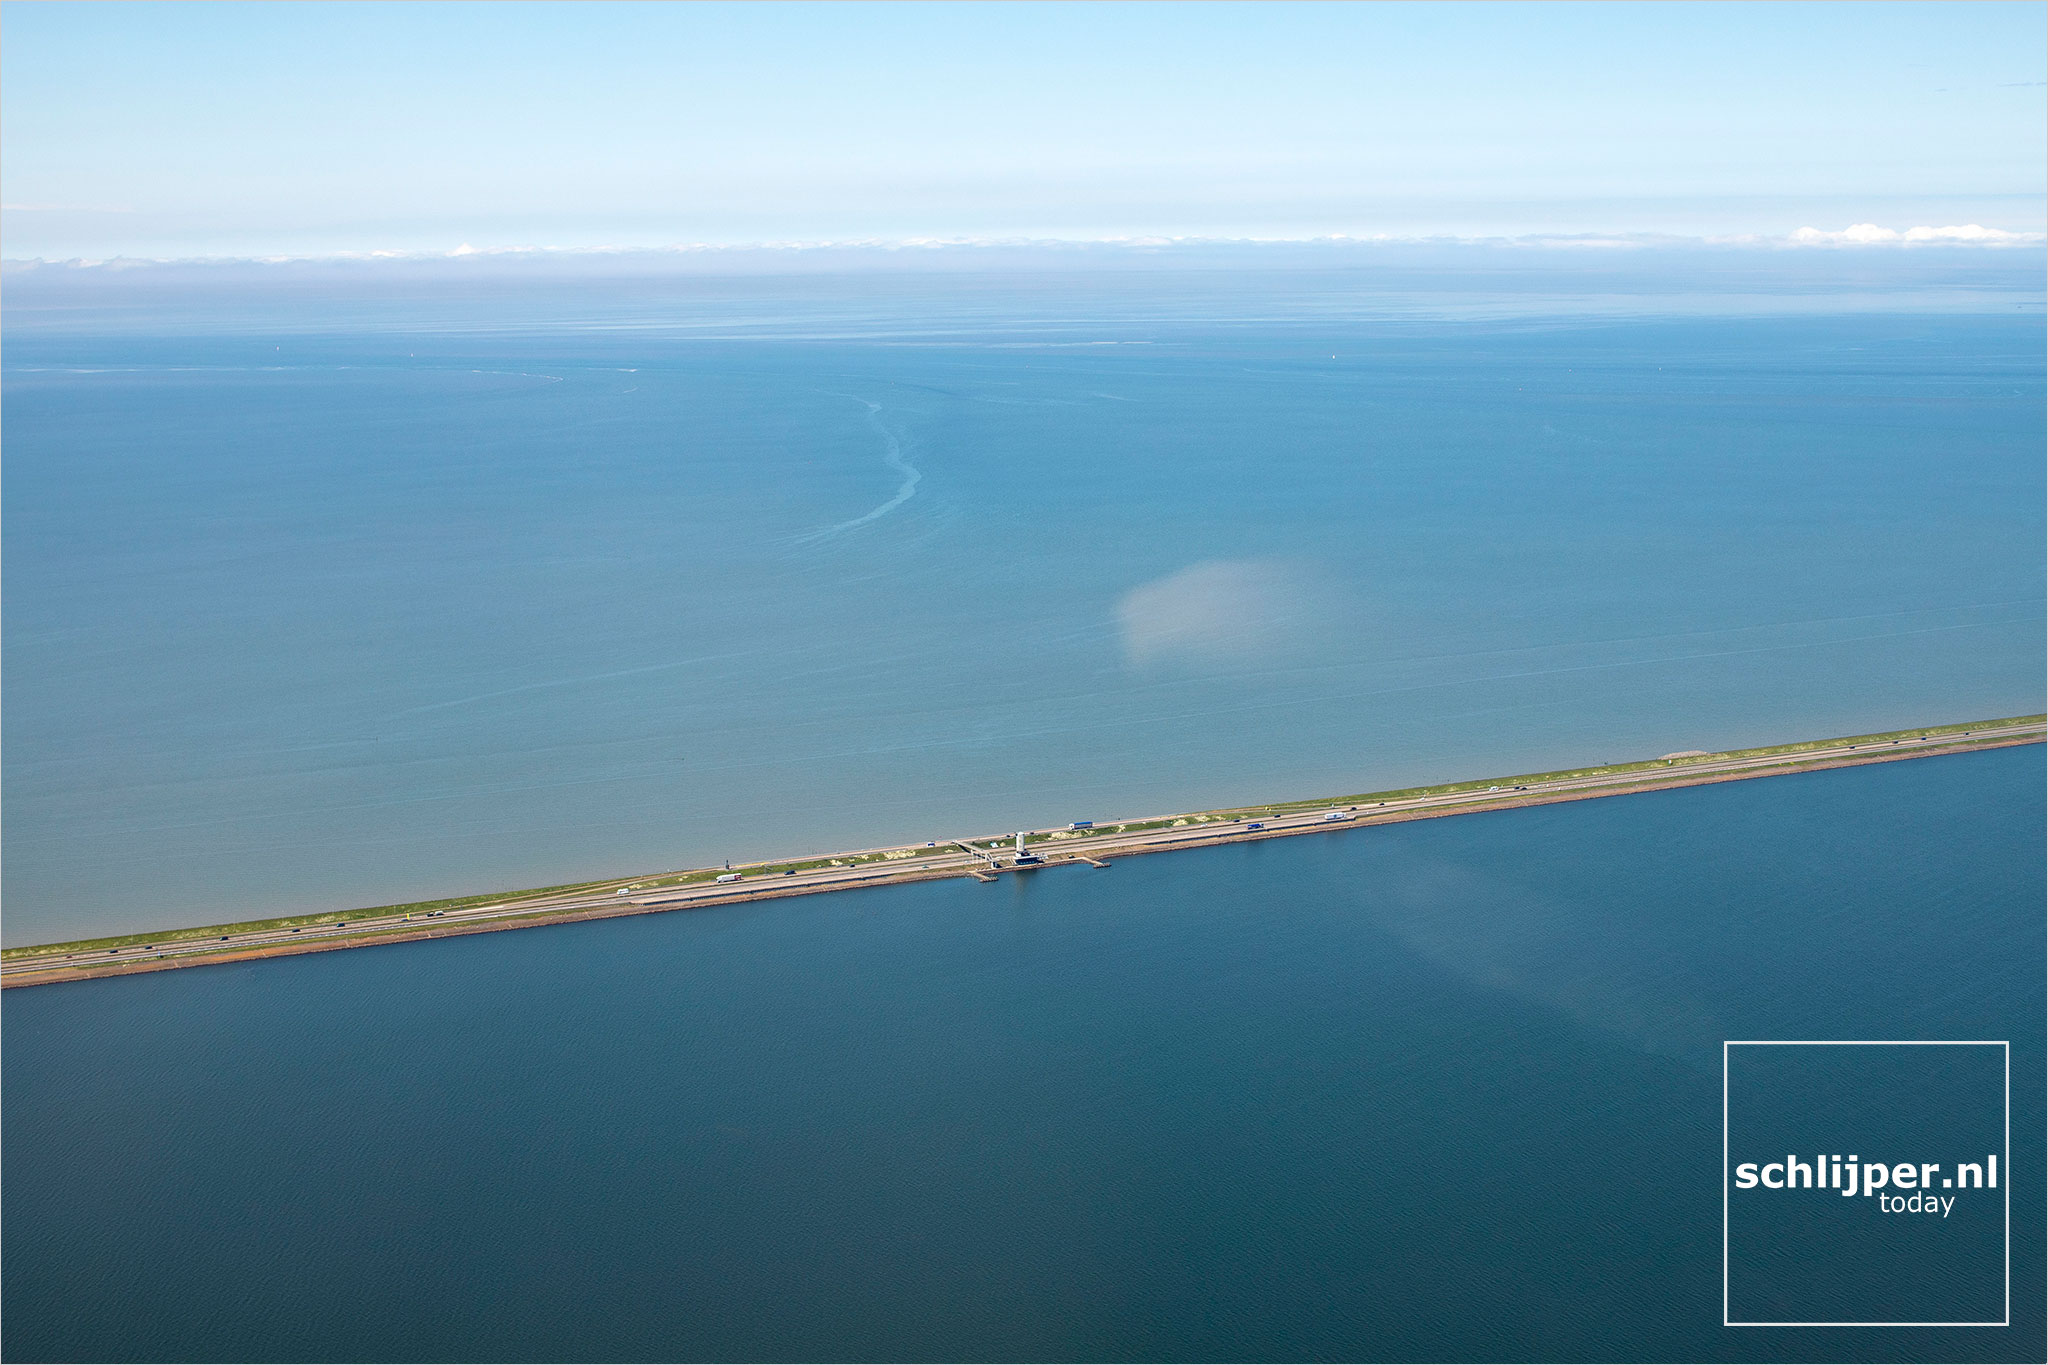 The Netherlands, Afsluitdijk, 28 mei 2021